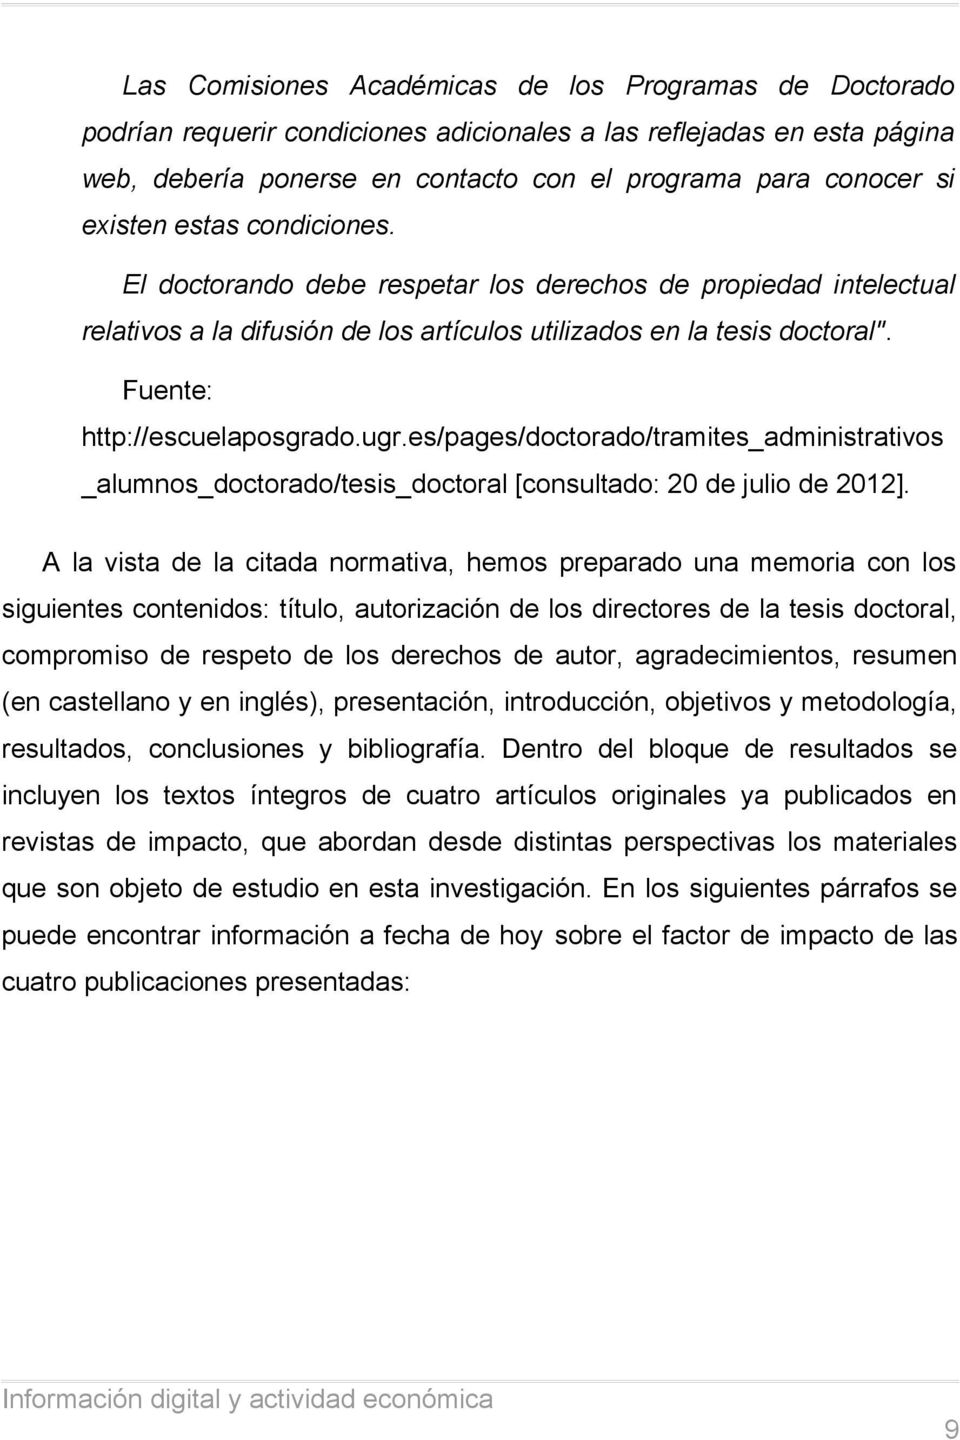 ugr.es/pages/doctorado/tramites_administrativos _alumnos_doctorado/tesis_doctoral [consultado: 20 de julio de 2012].